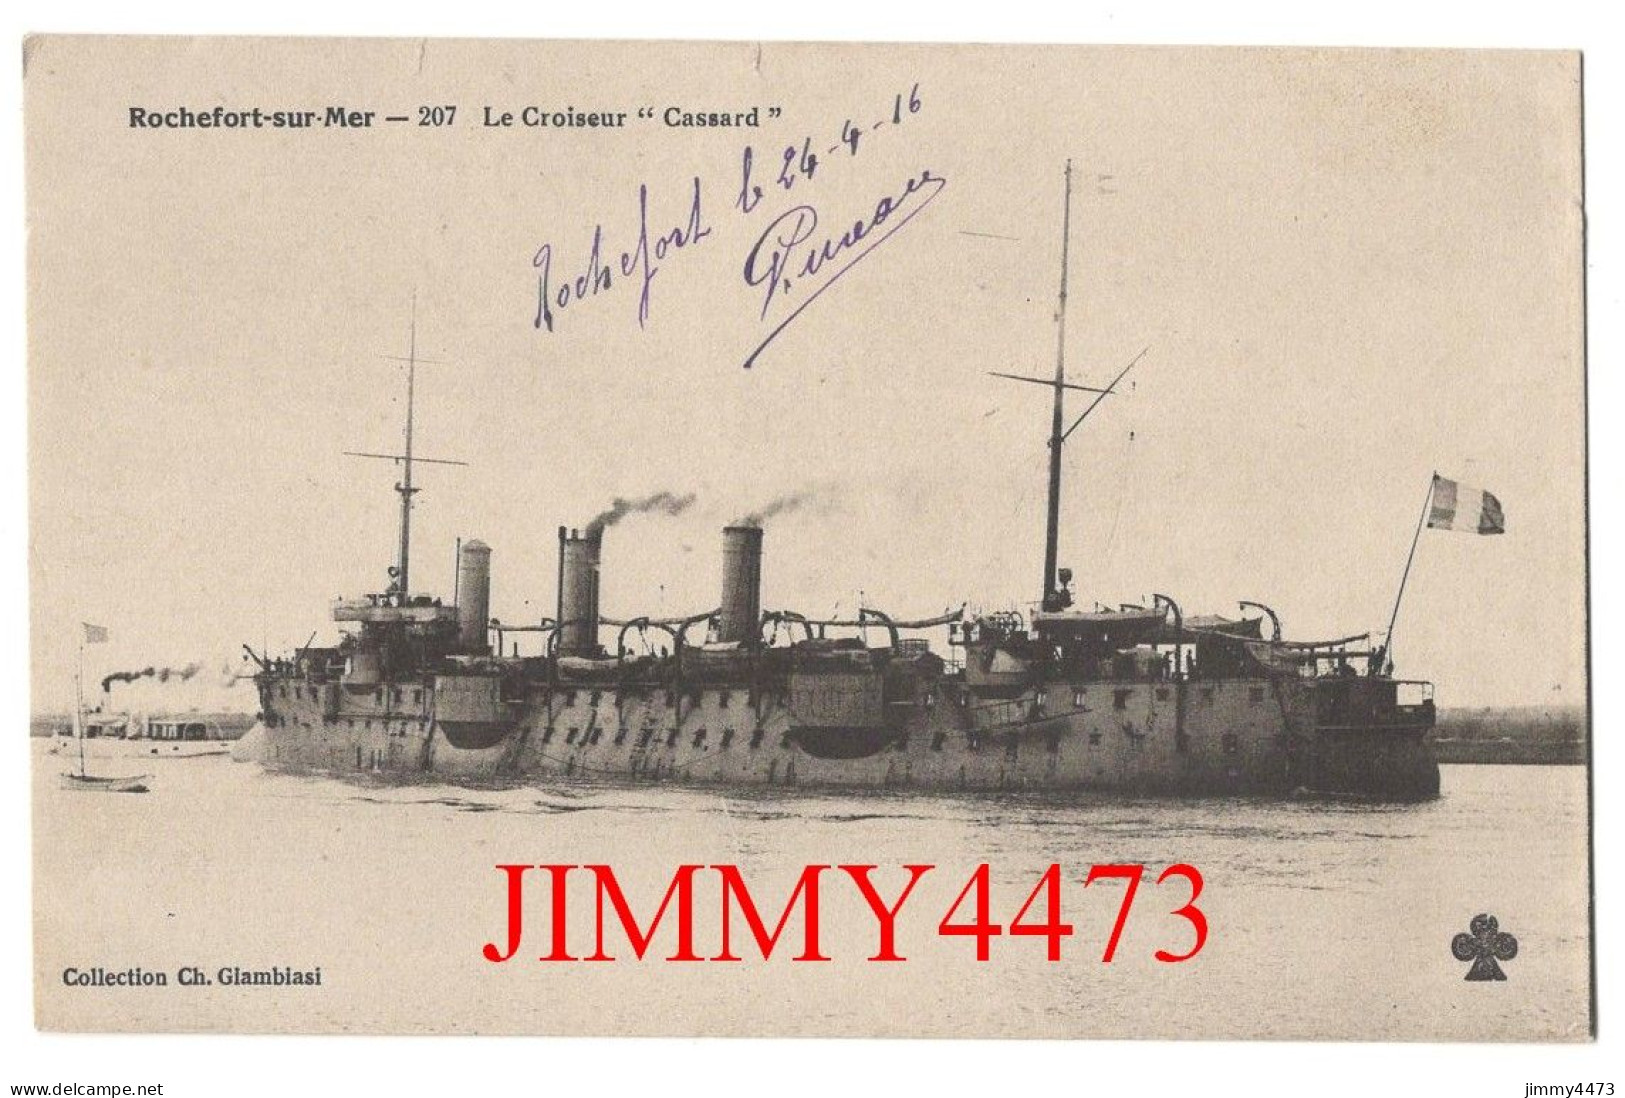 CPA - Rochefort-sur-Mer - Le Croiseur " Cassard " En 1916 - N° 207 - Coll. Ch. Glambiasi - Guerra